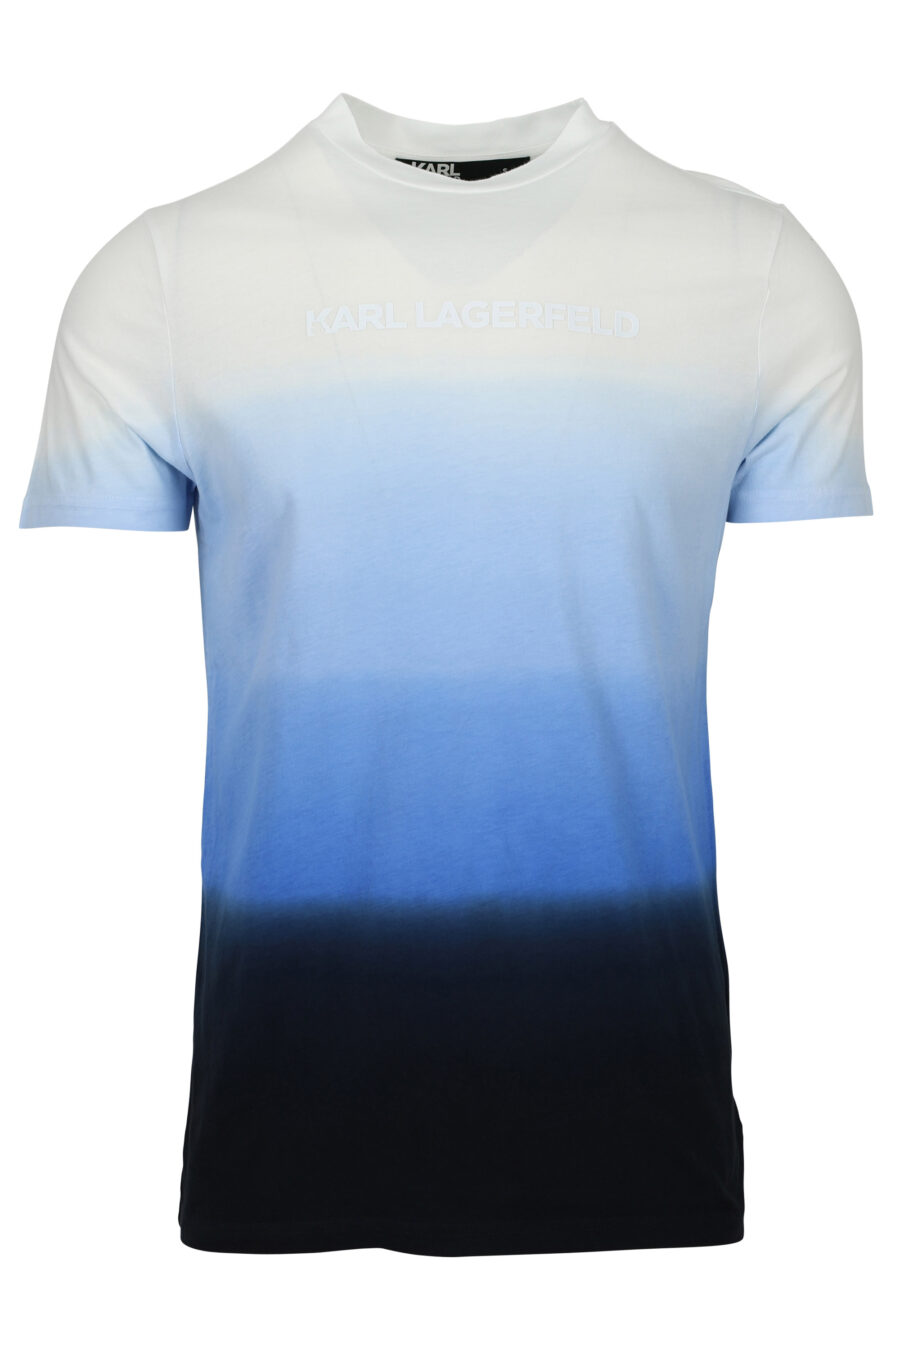 Camiseta en degradé azul con minilogo - 4062226789400